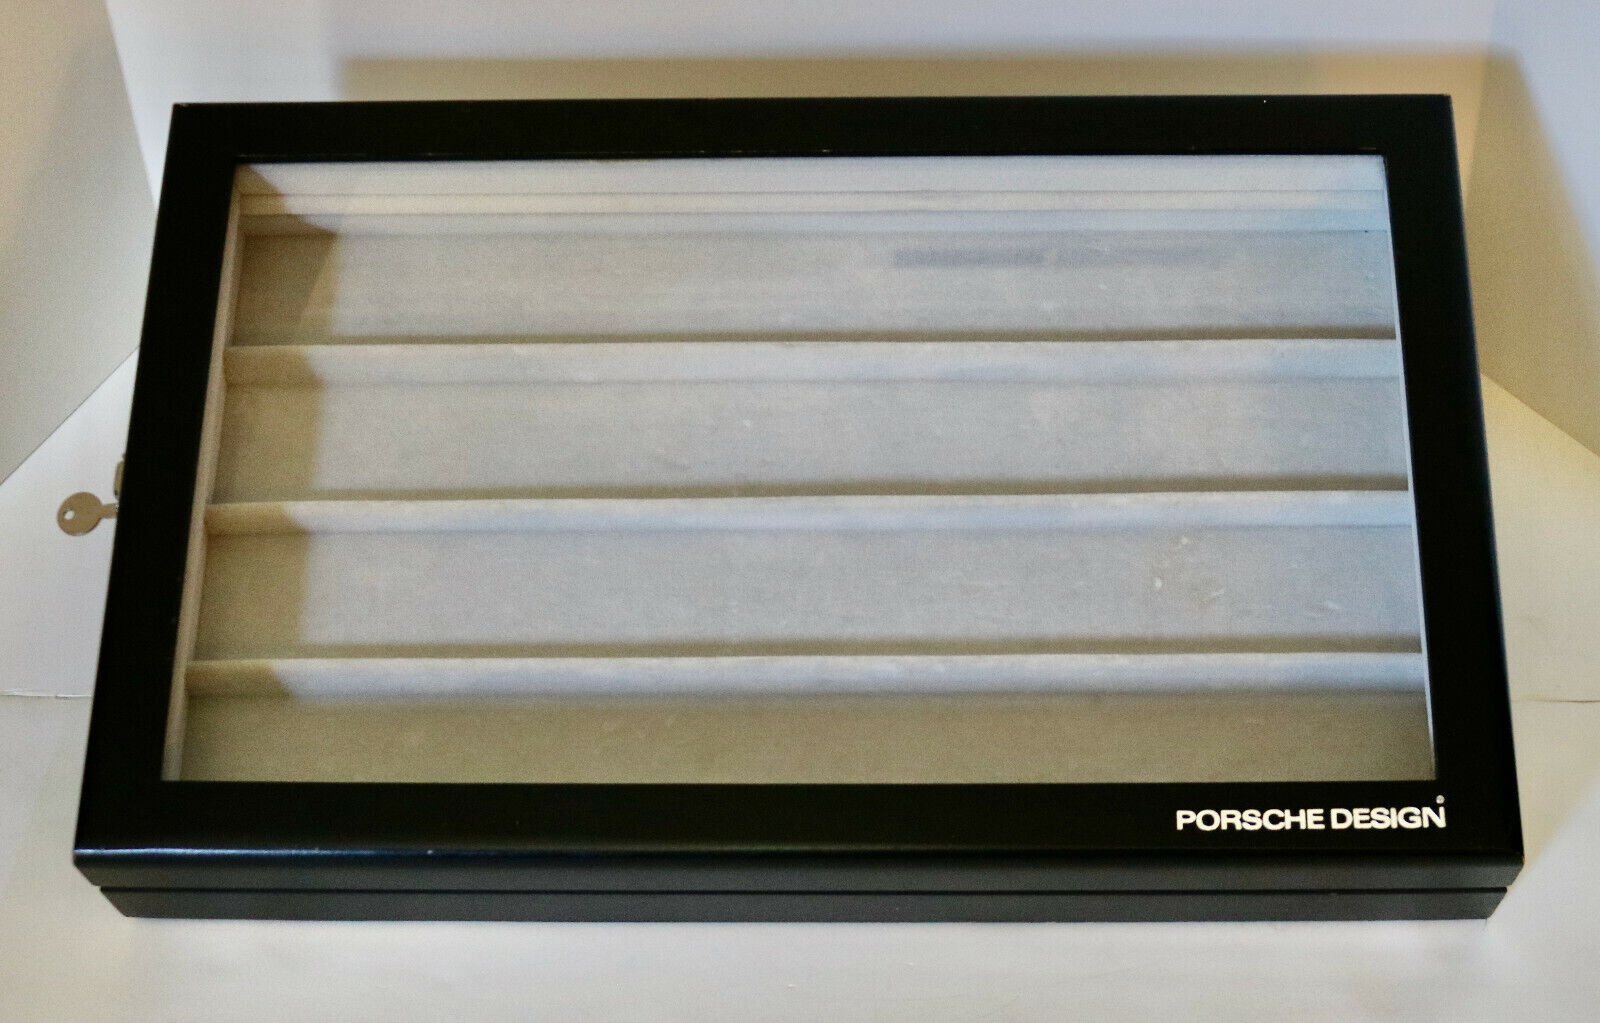 PORSCHE DESIGN locking store counter display